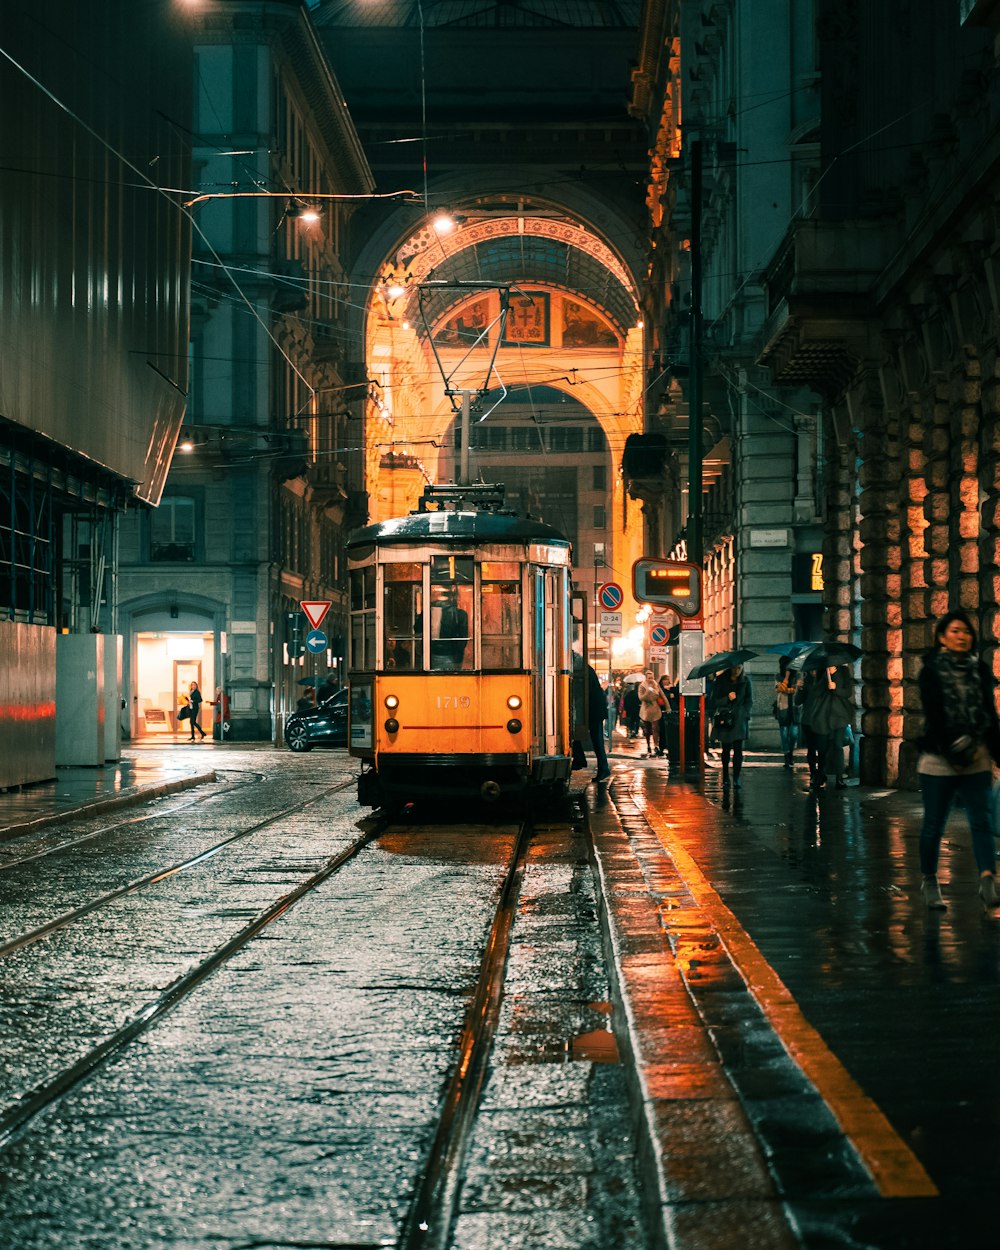 Persone che camminano sul marciapiede vicino al tram giallo durante la notte